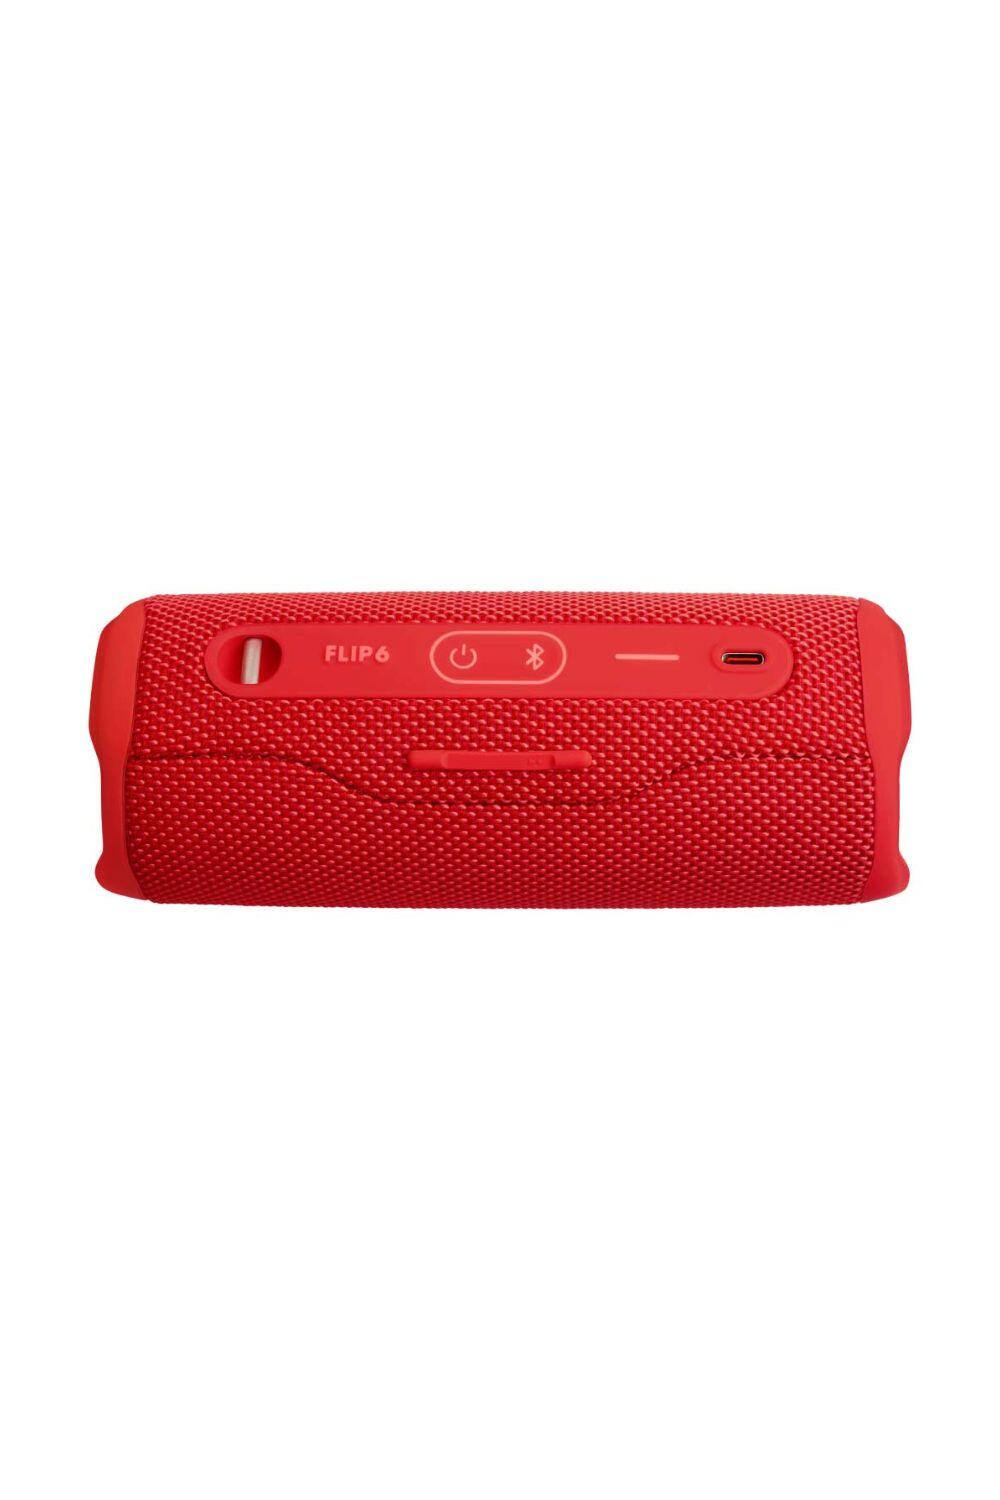 JBL Flip 6 Portable Waterproof and Dustproof Bluetooth Speaker 3/4